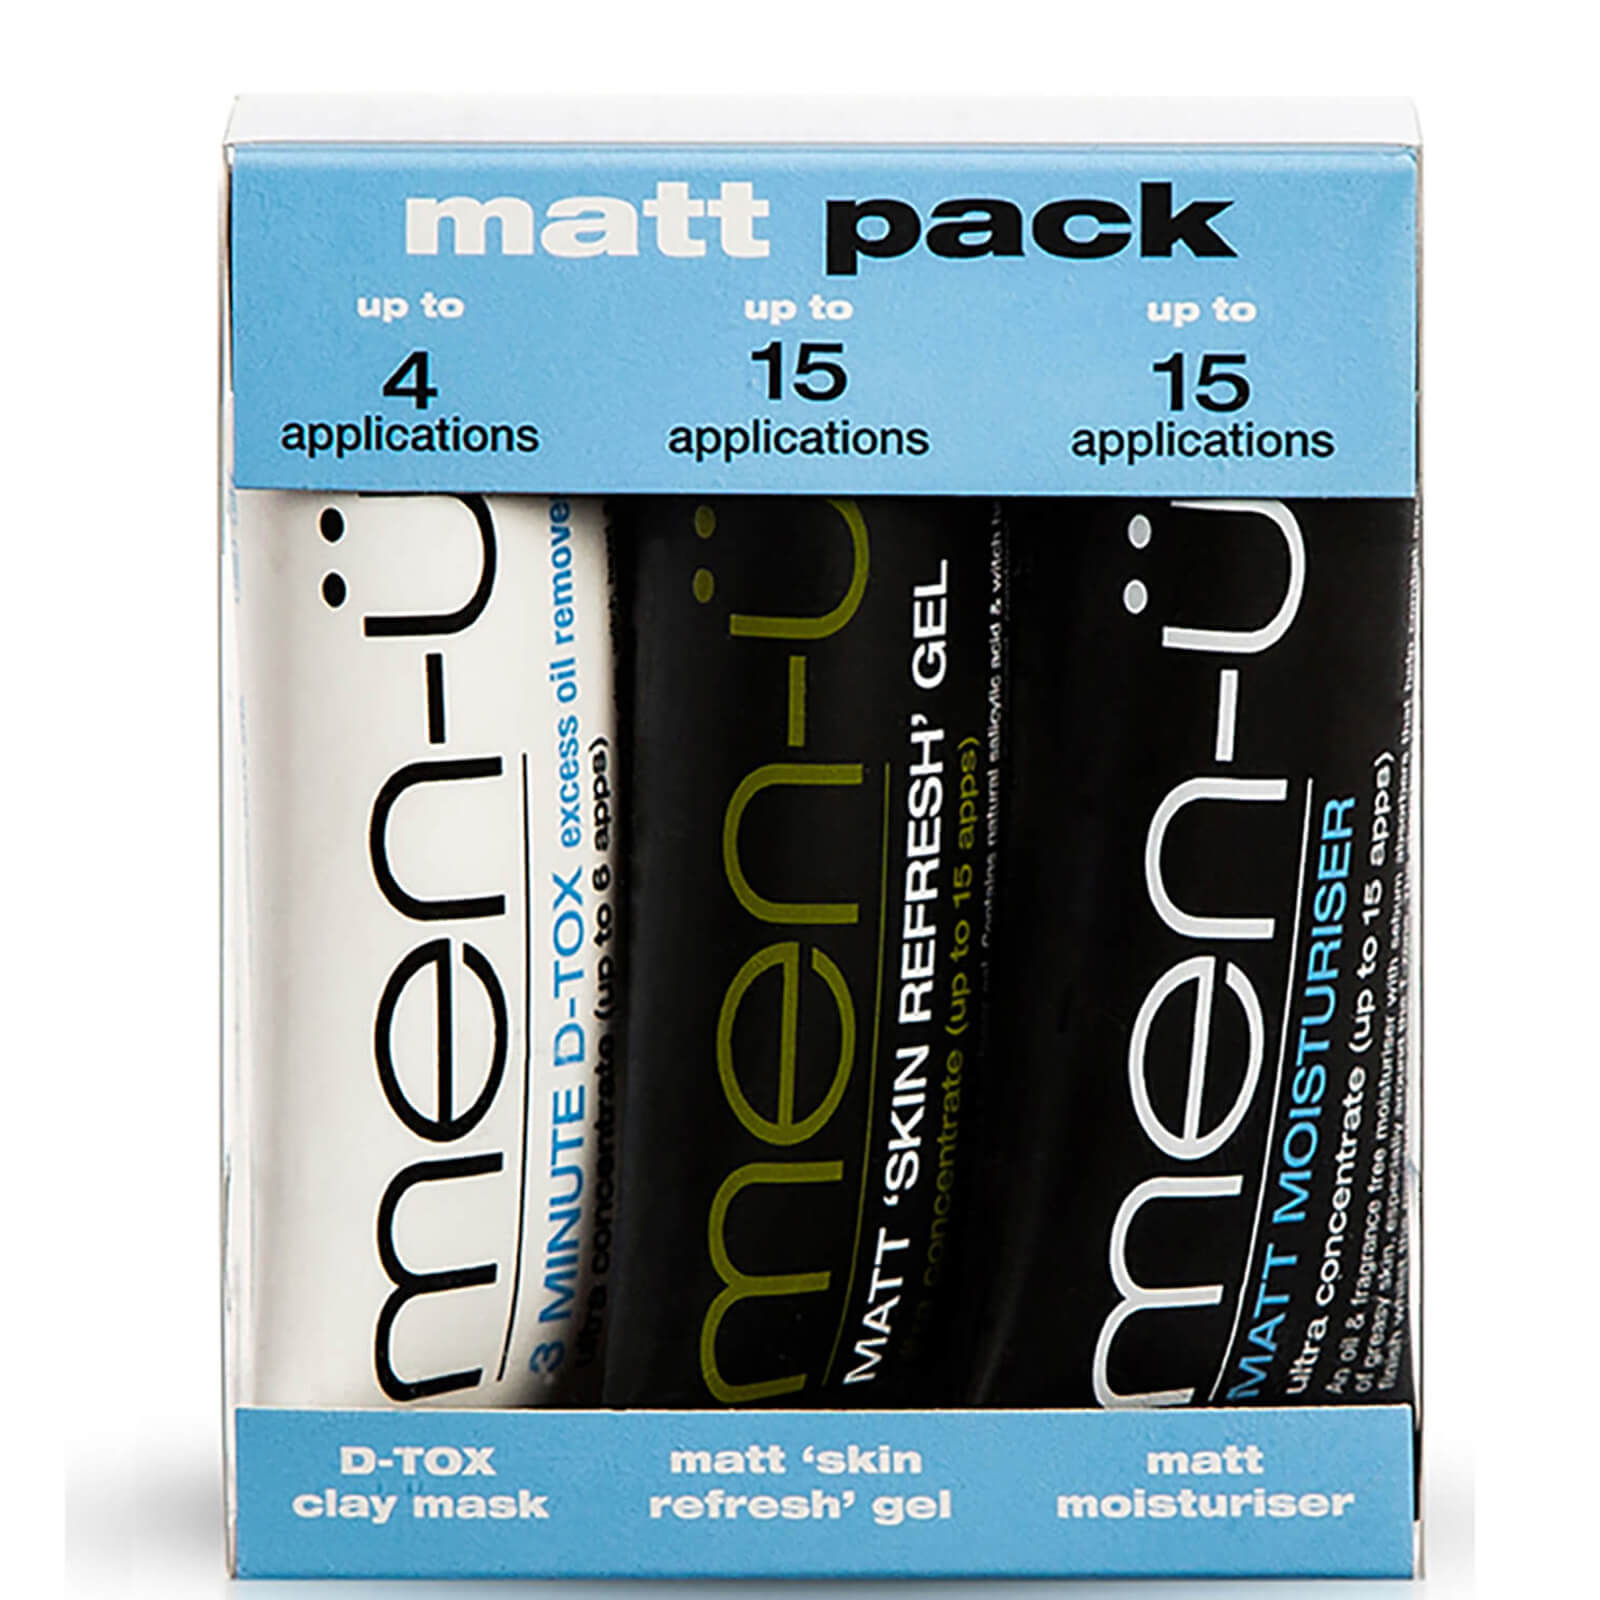 men-u men-ü Matt Pack (3 Products)